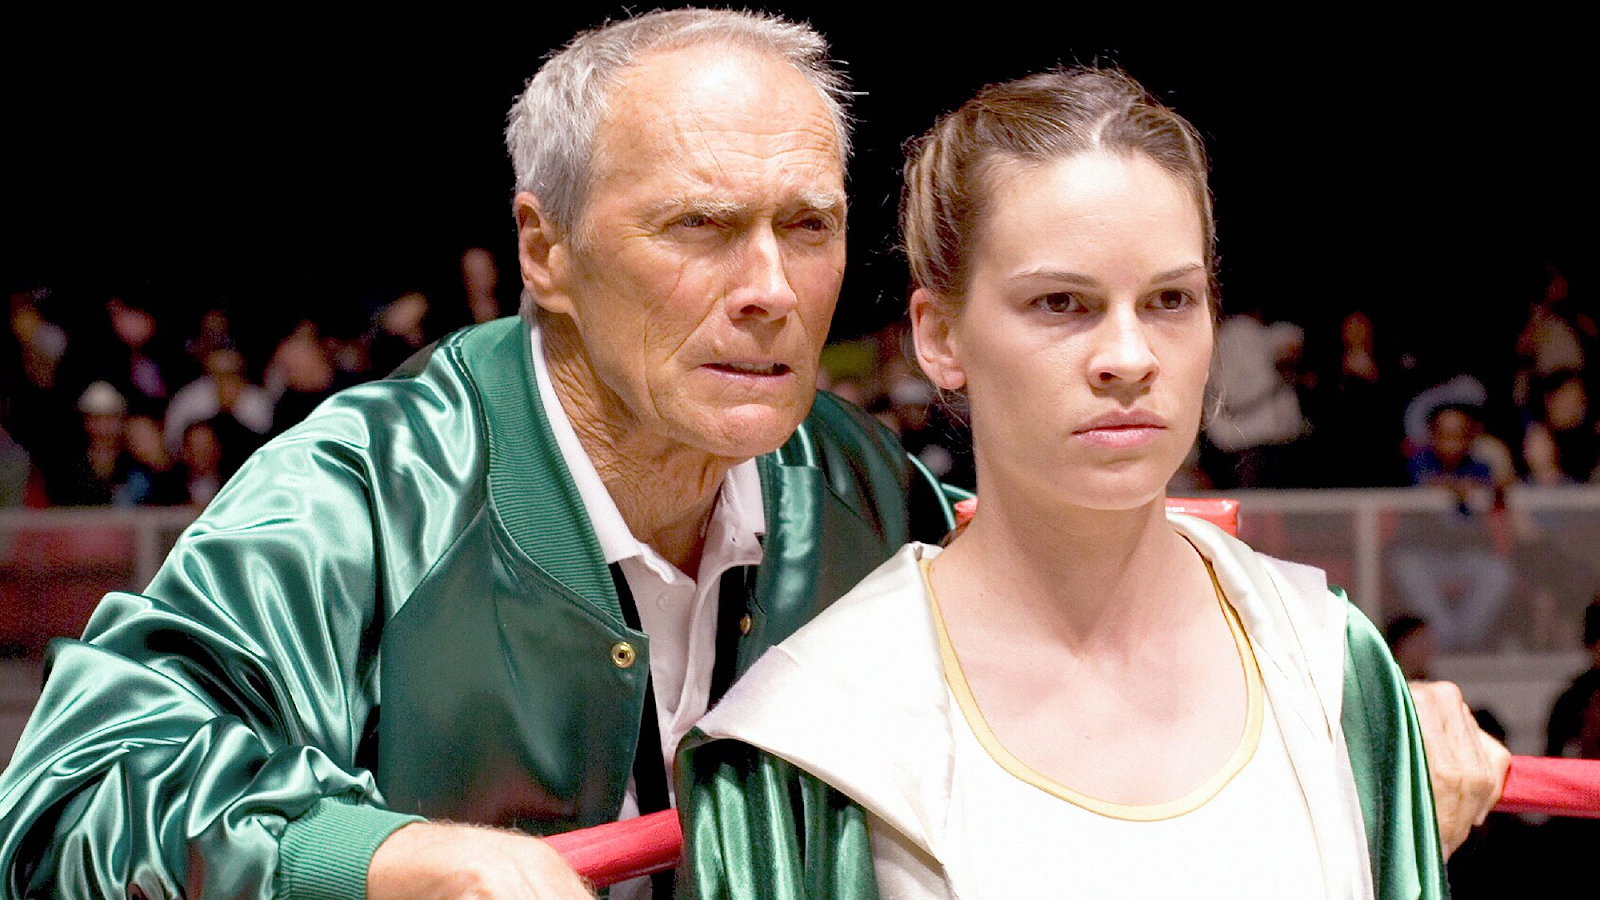 Clint Eastwood y Hilary Swank en una escena de la película 'Million Dollar Baby'. Ambos personajes están junto a un ring de boxeo, con Clint Eastwood en su papel de entrenador y Hilary Swank como boxeadora.